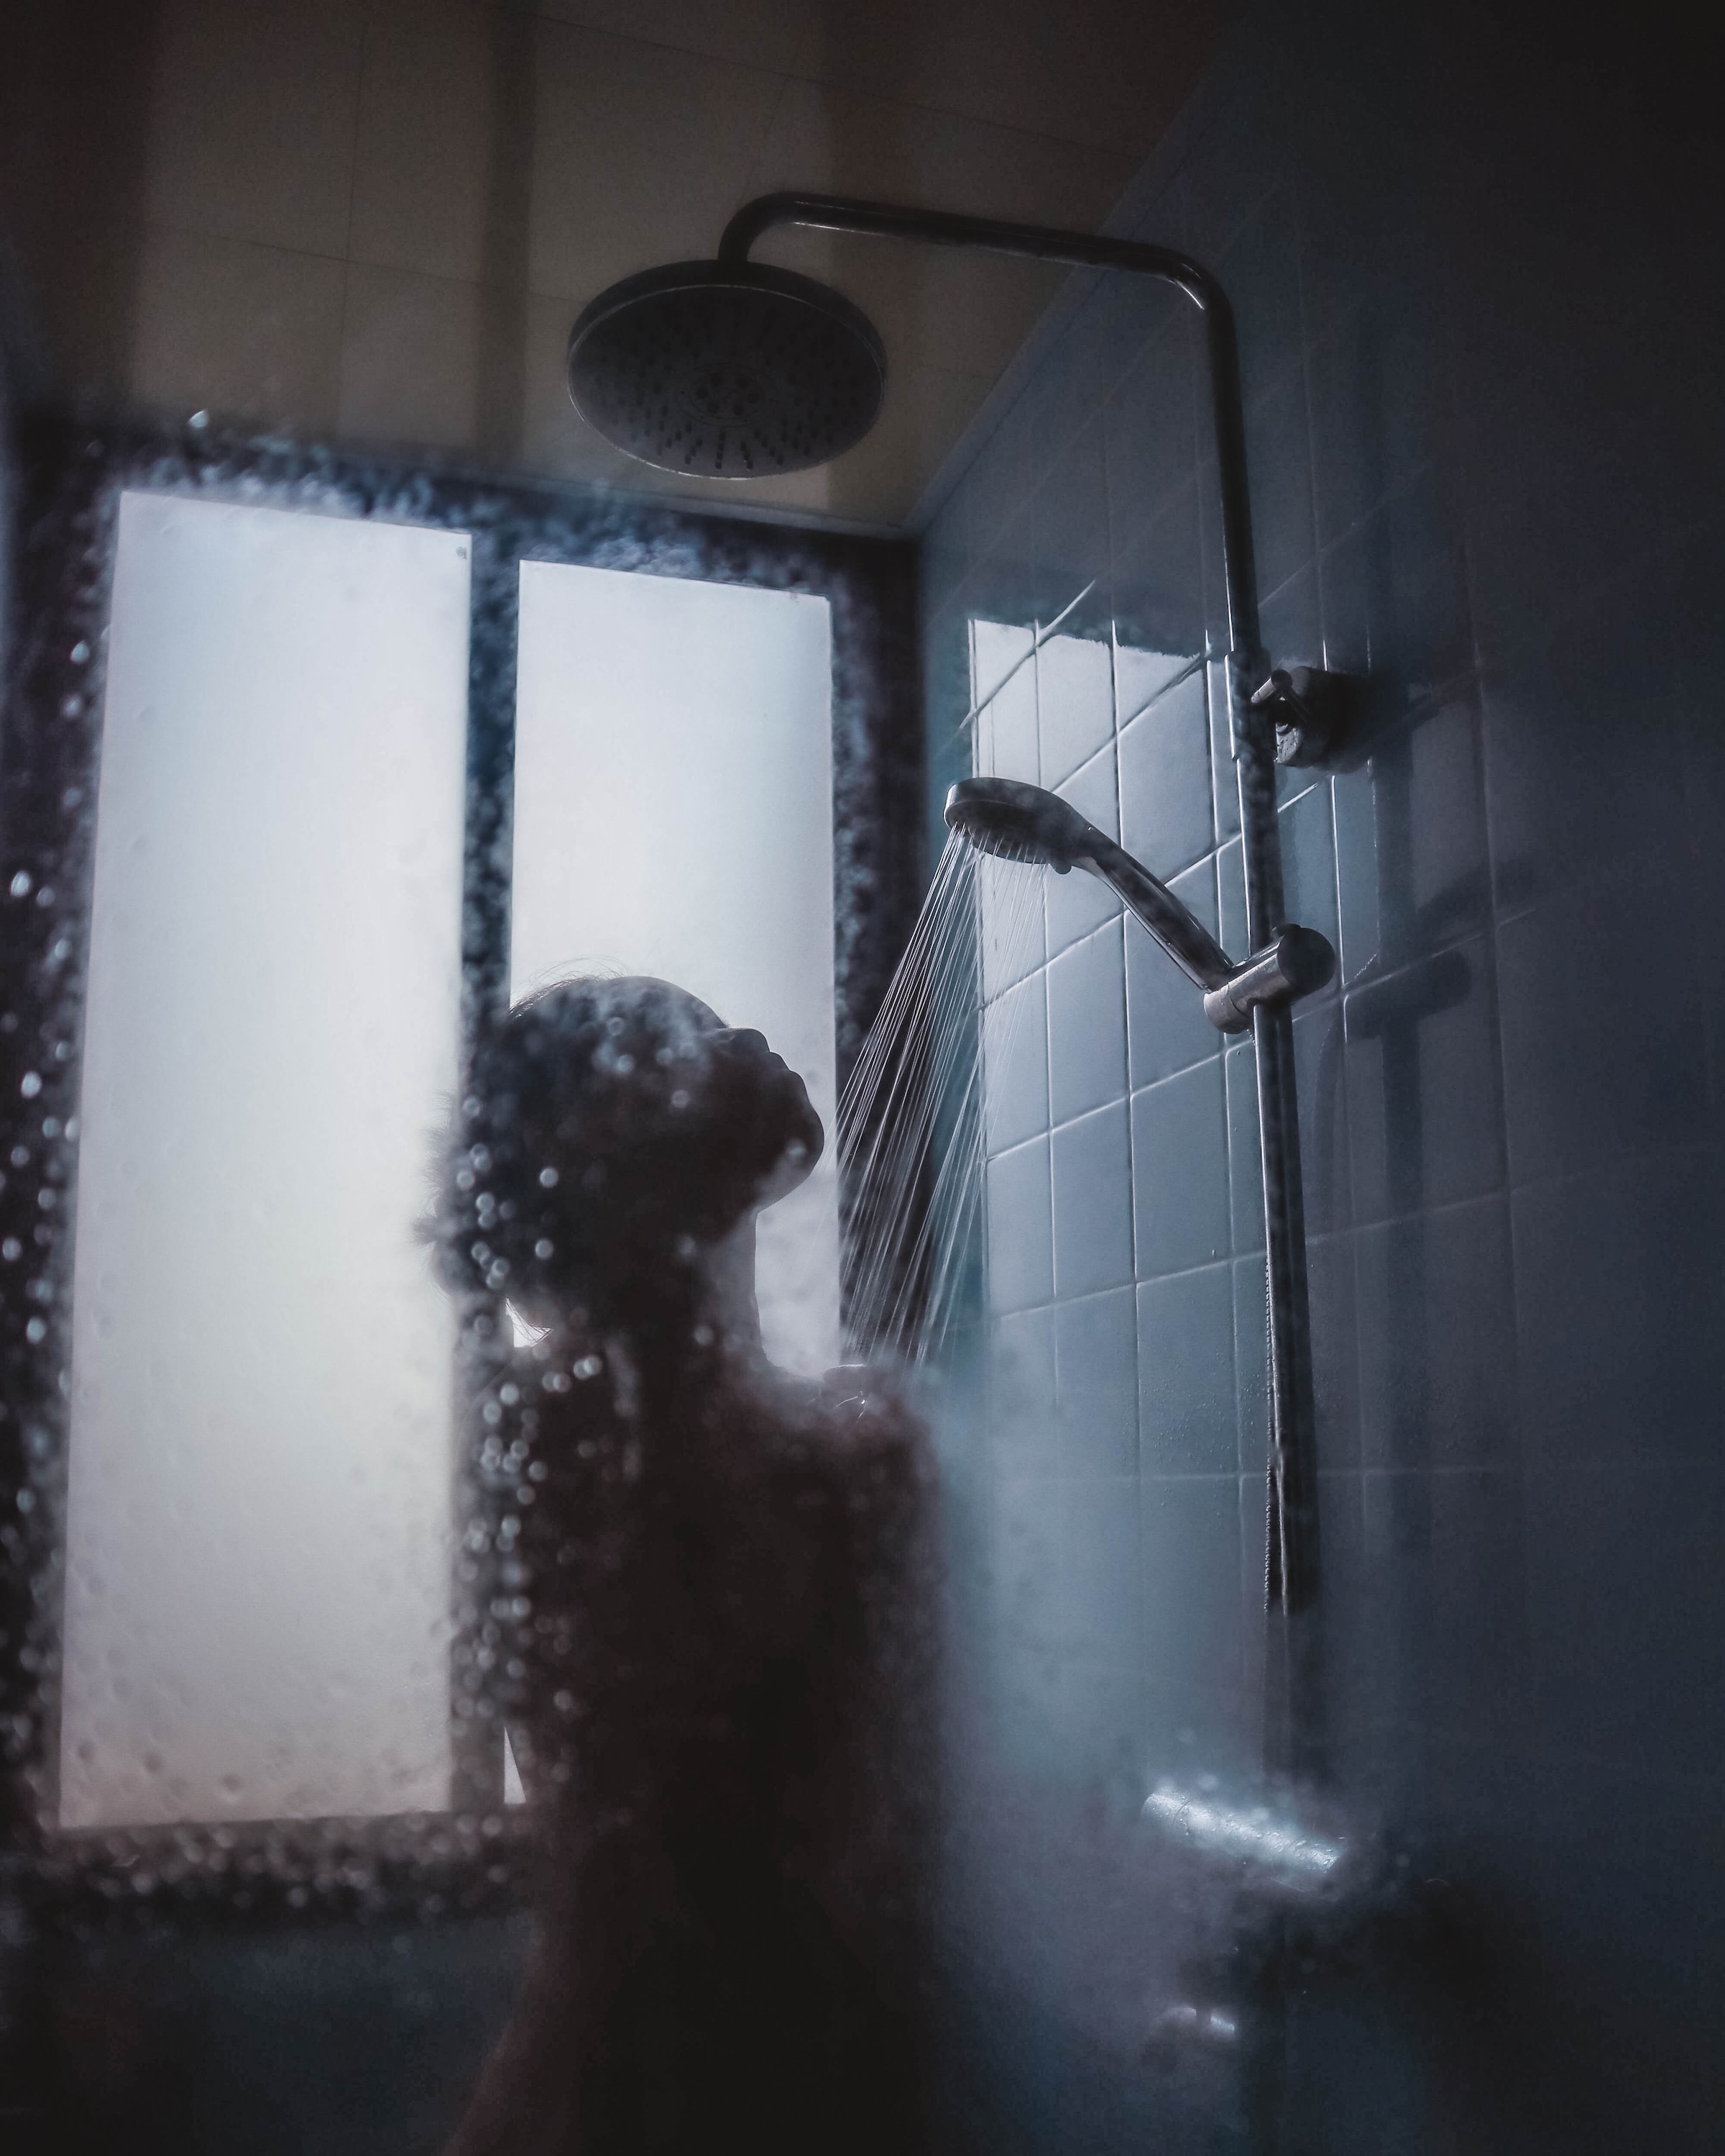 Person in shower | Source: Unsplash